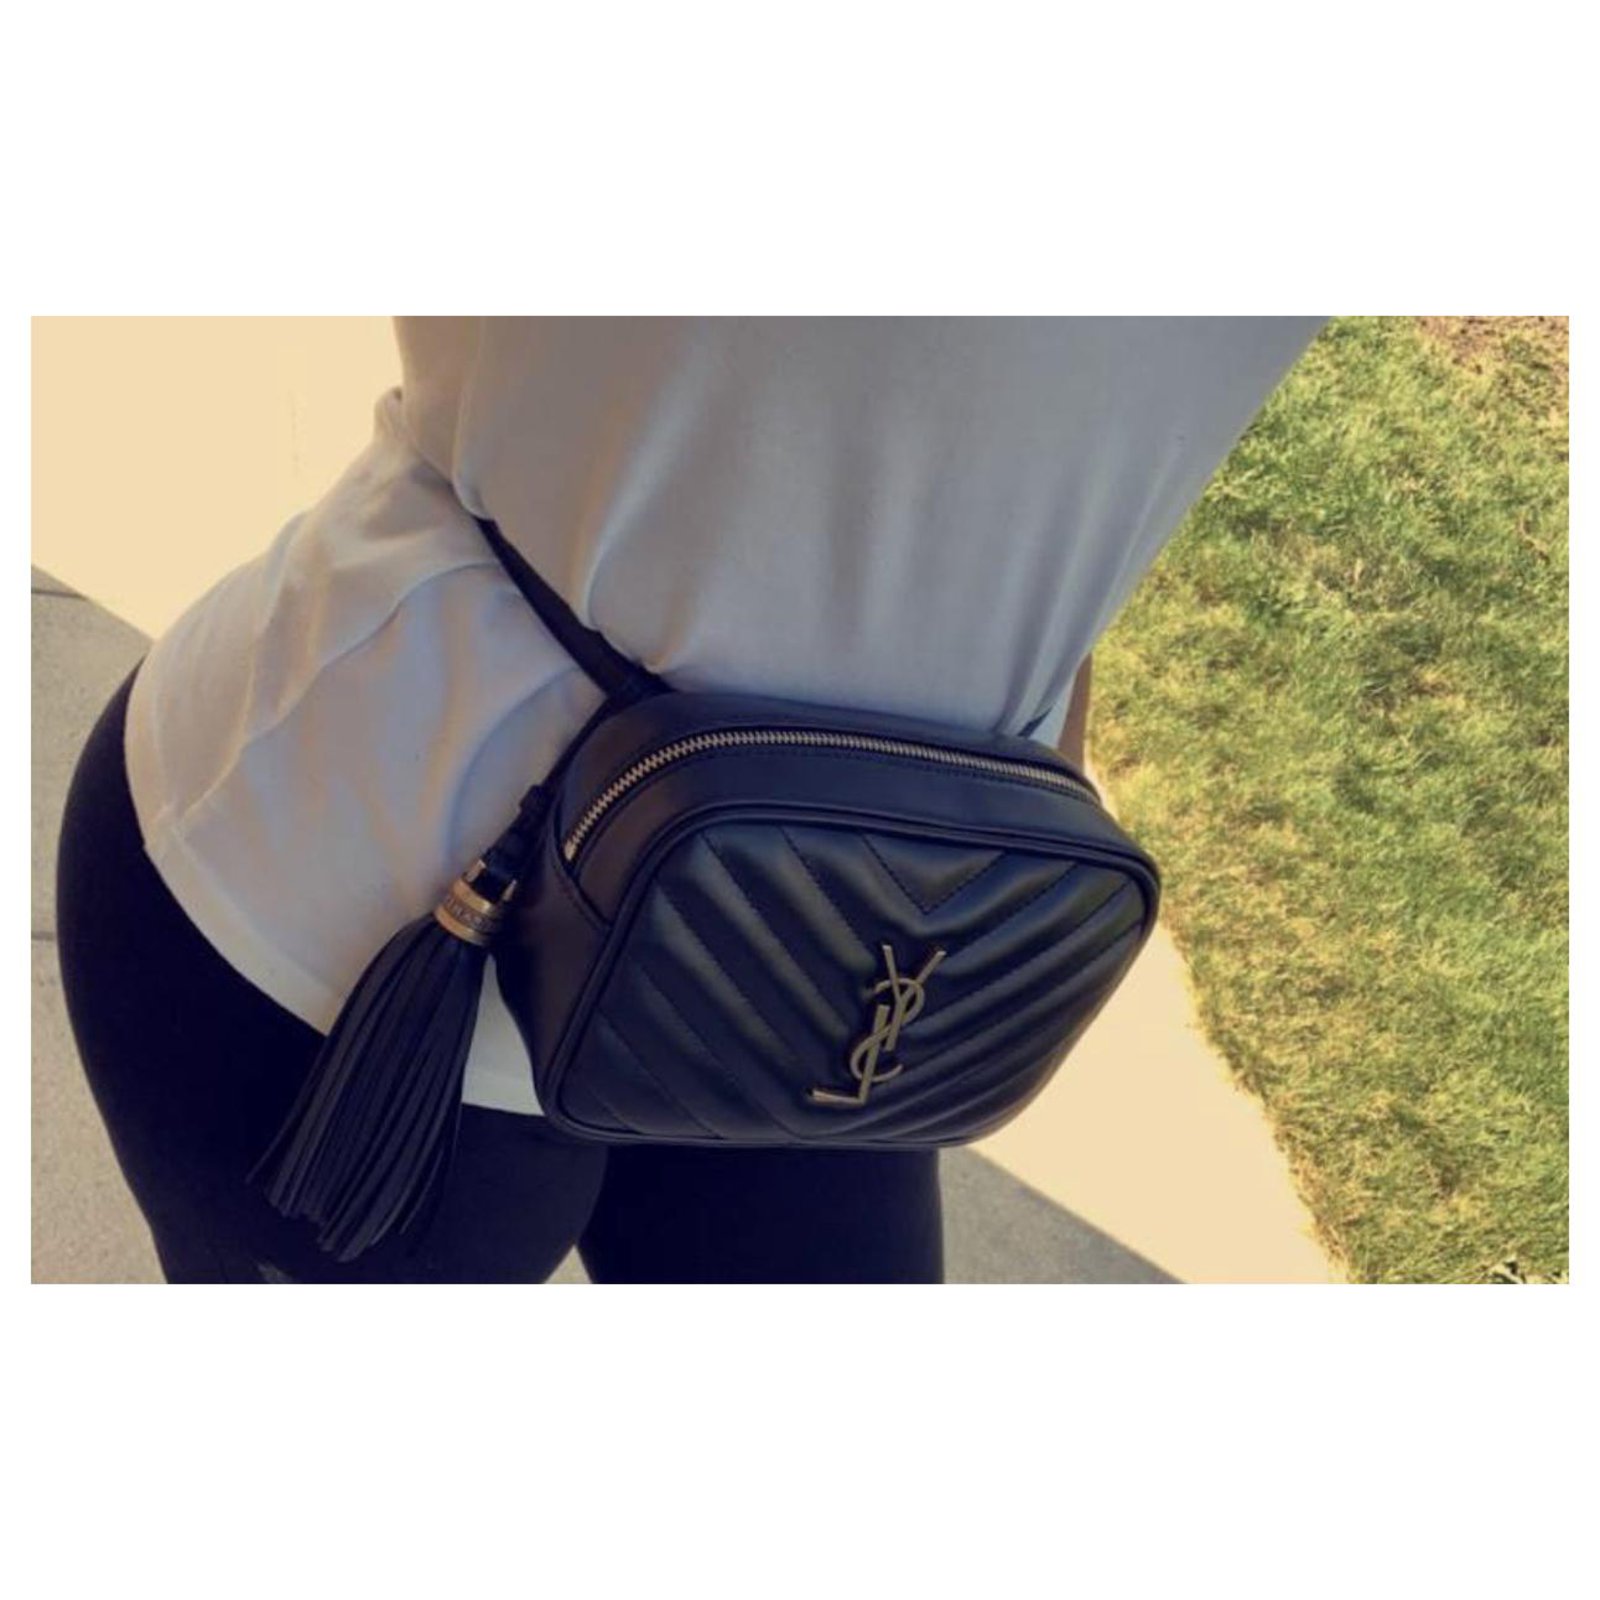 Noir #saintlaurent #YSL #beltbag  Ysl belt bag, Belt bag fashion